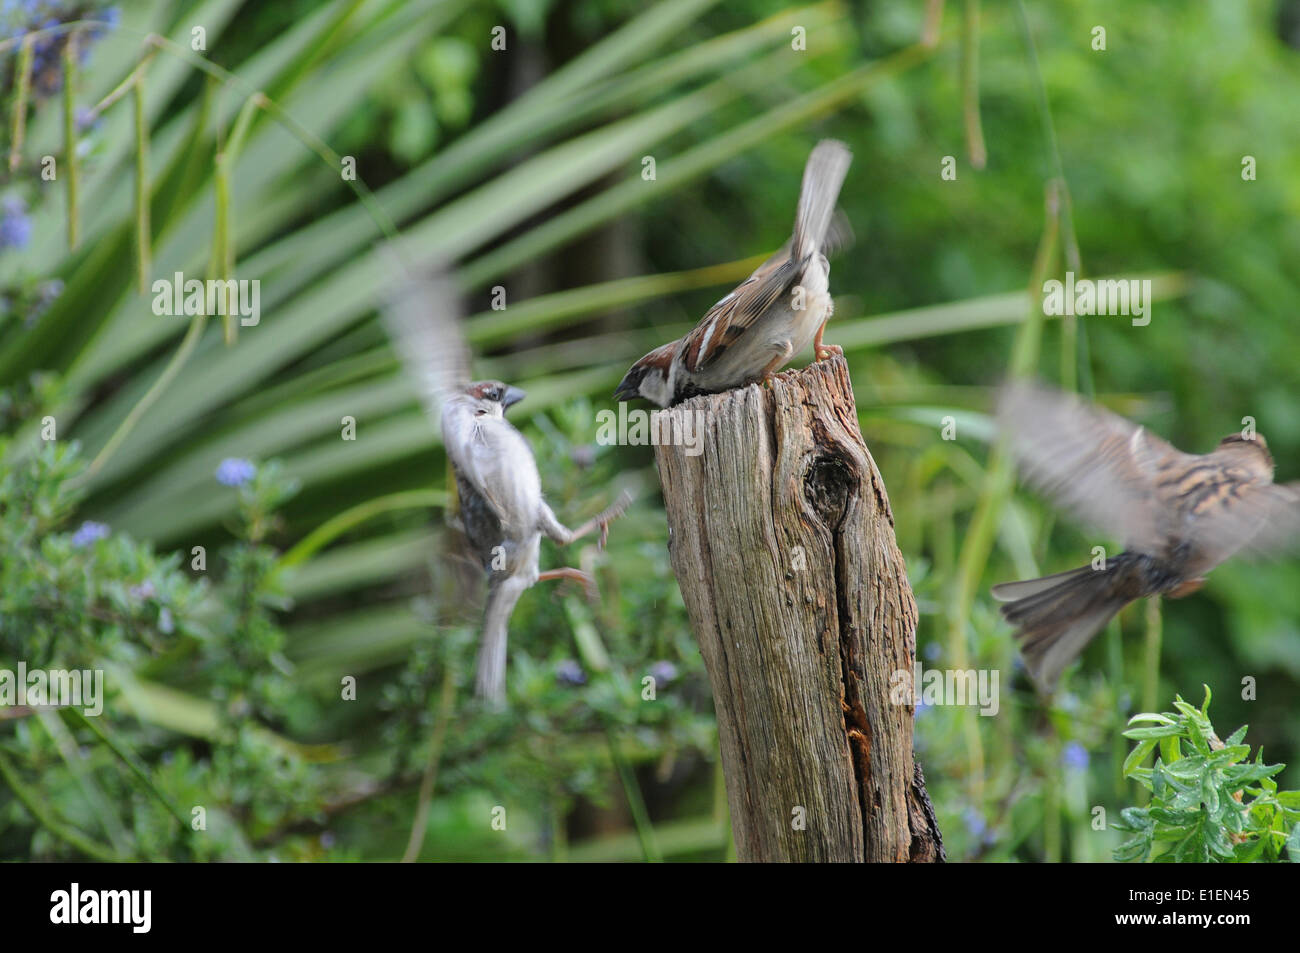 Broad Oak, Heathfield, East Sussex, UK.2 June 2014.Sparrows combattere contro il worm mealworm nascosto in un vecchio palo da recinzione. Alimentazione frenzy ora per alimentare nuovi hatchlings. Alcuni interessanti studi di volo. Foto Stock